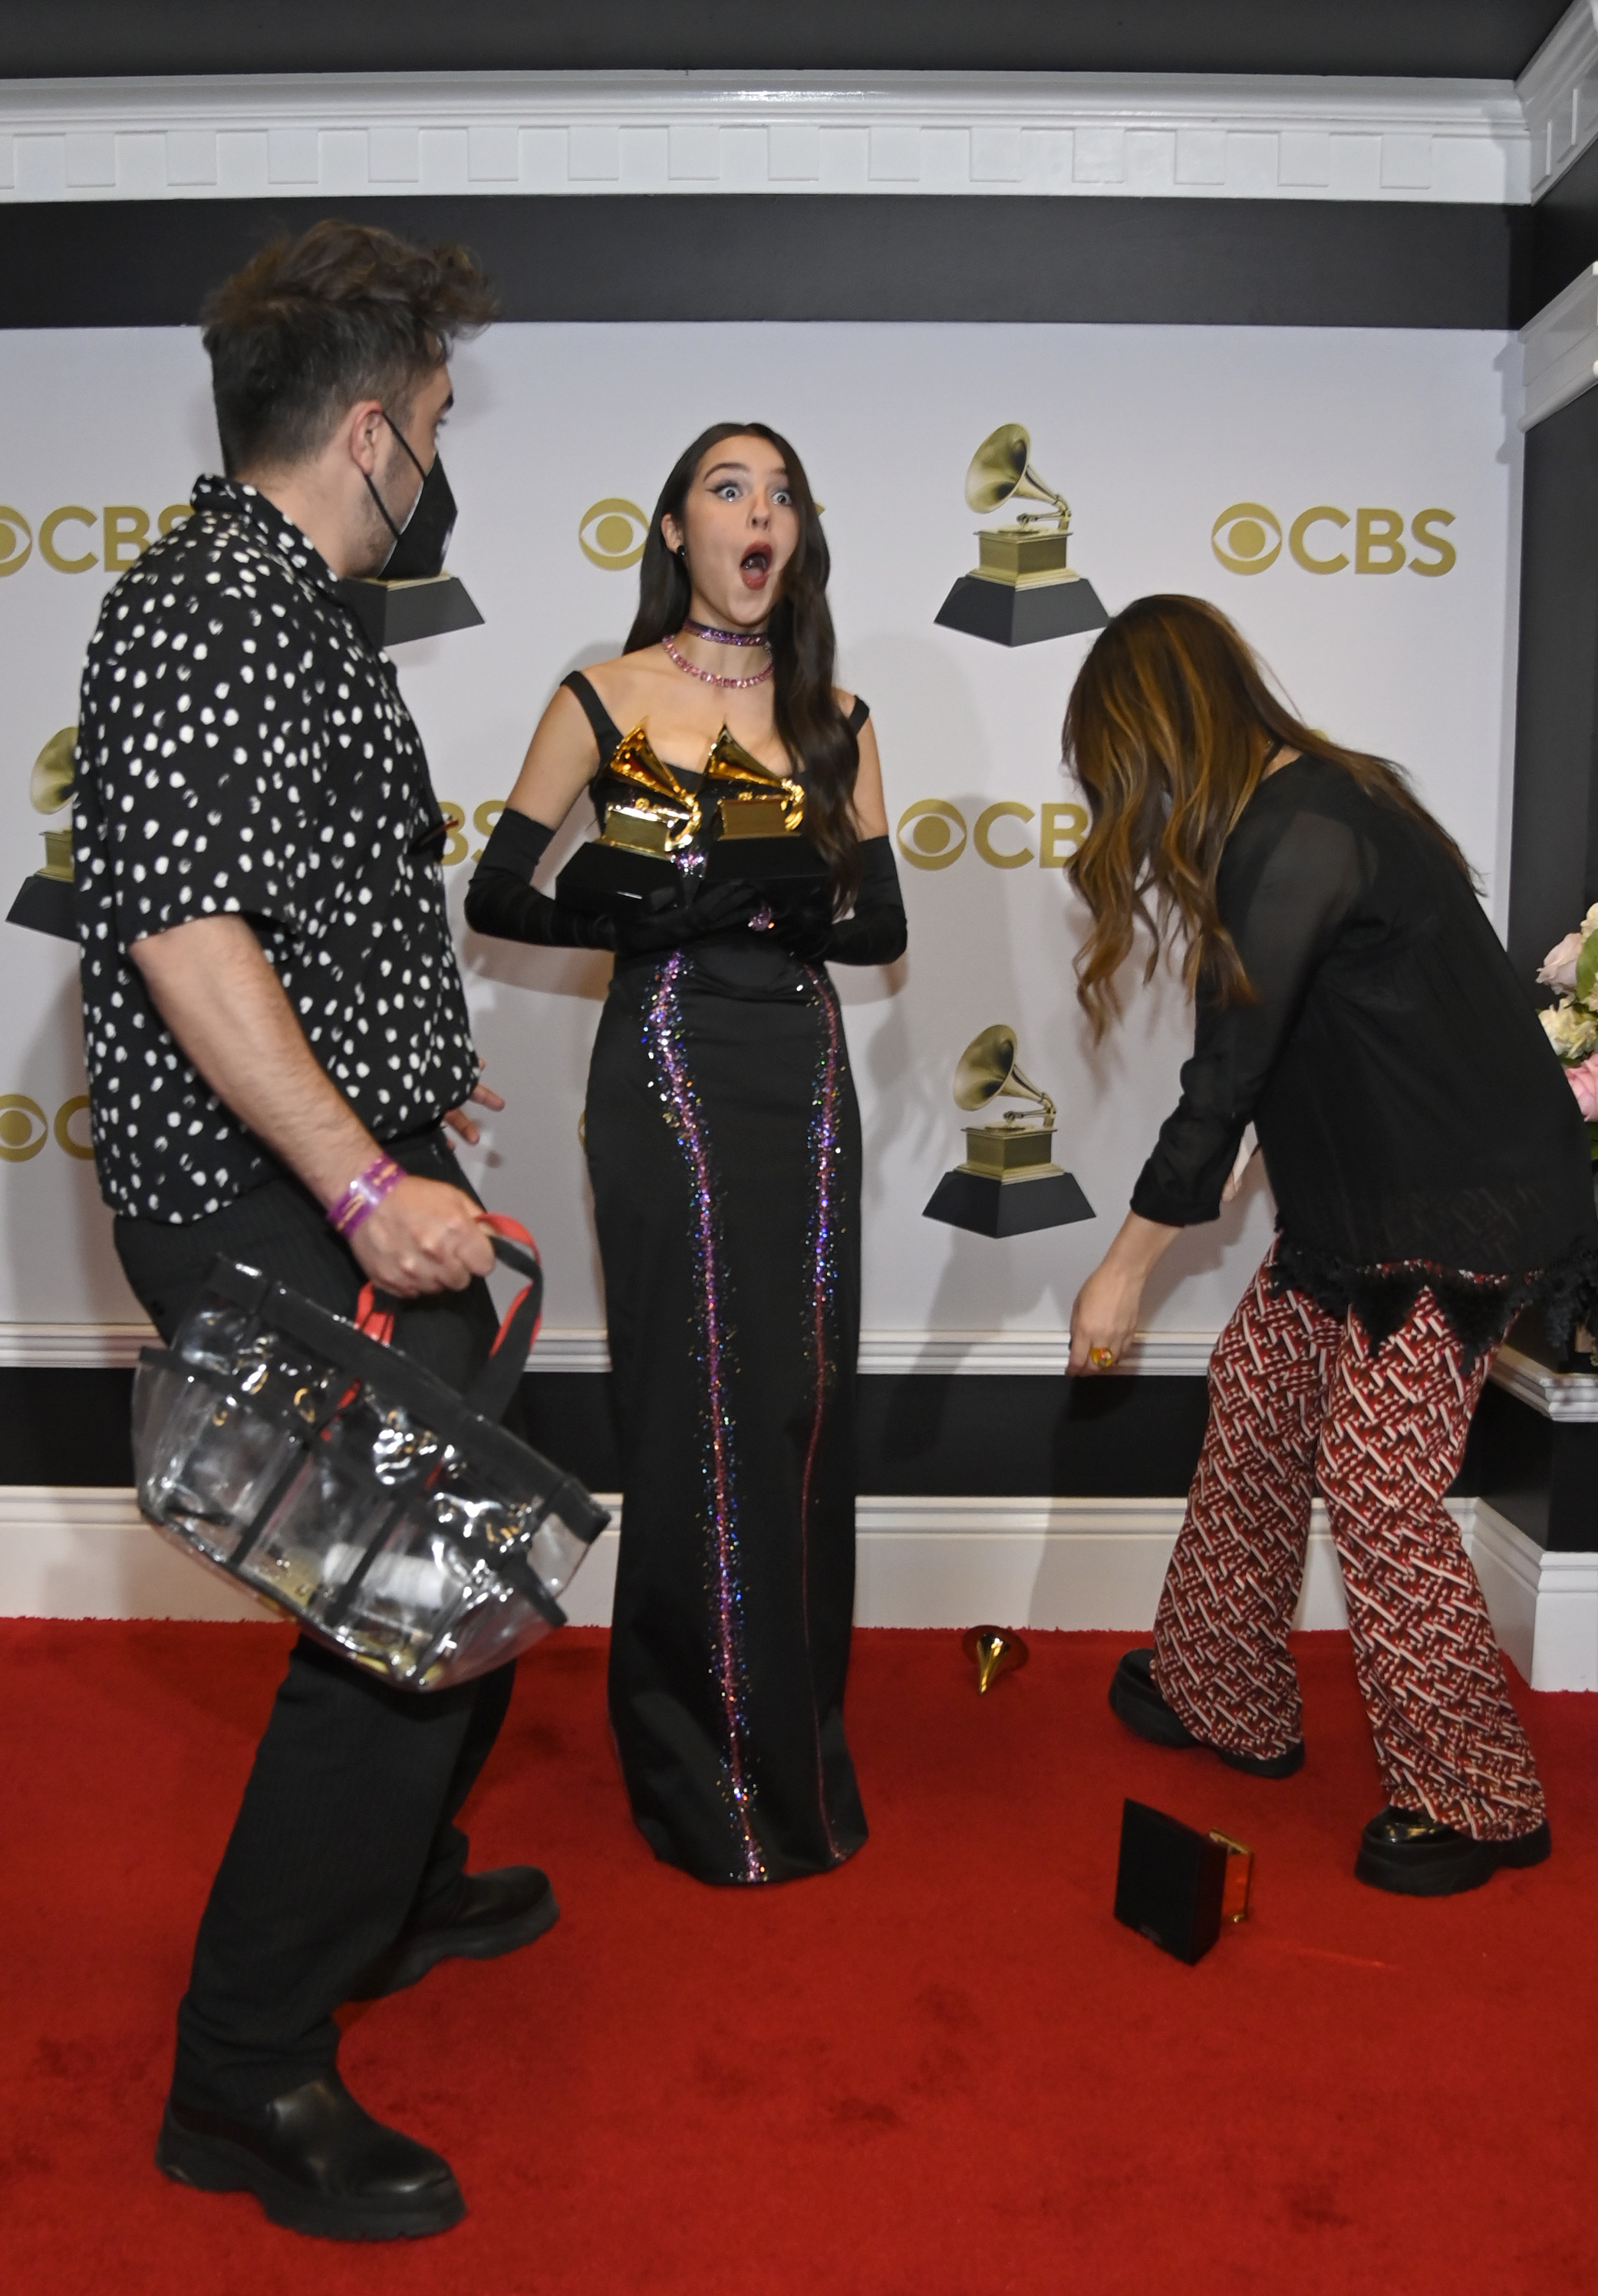 Olivia Rodrigo drops a Grammy Award